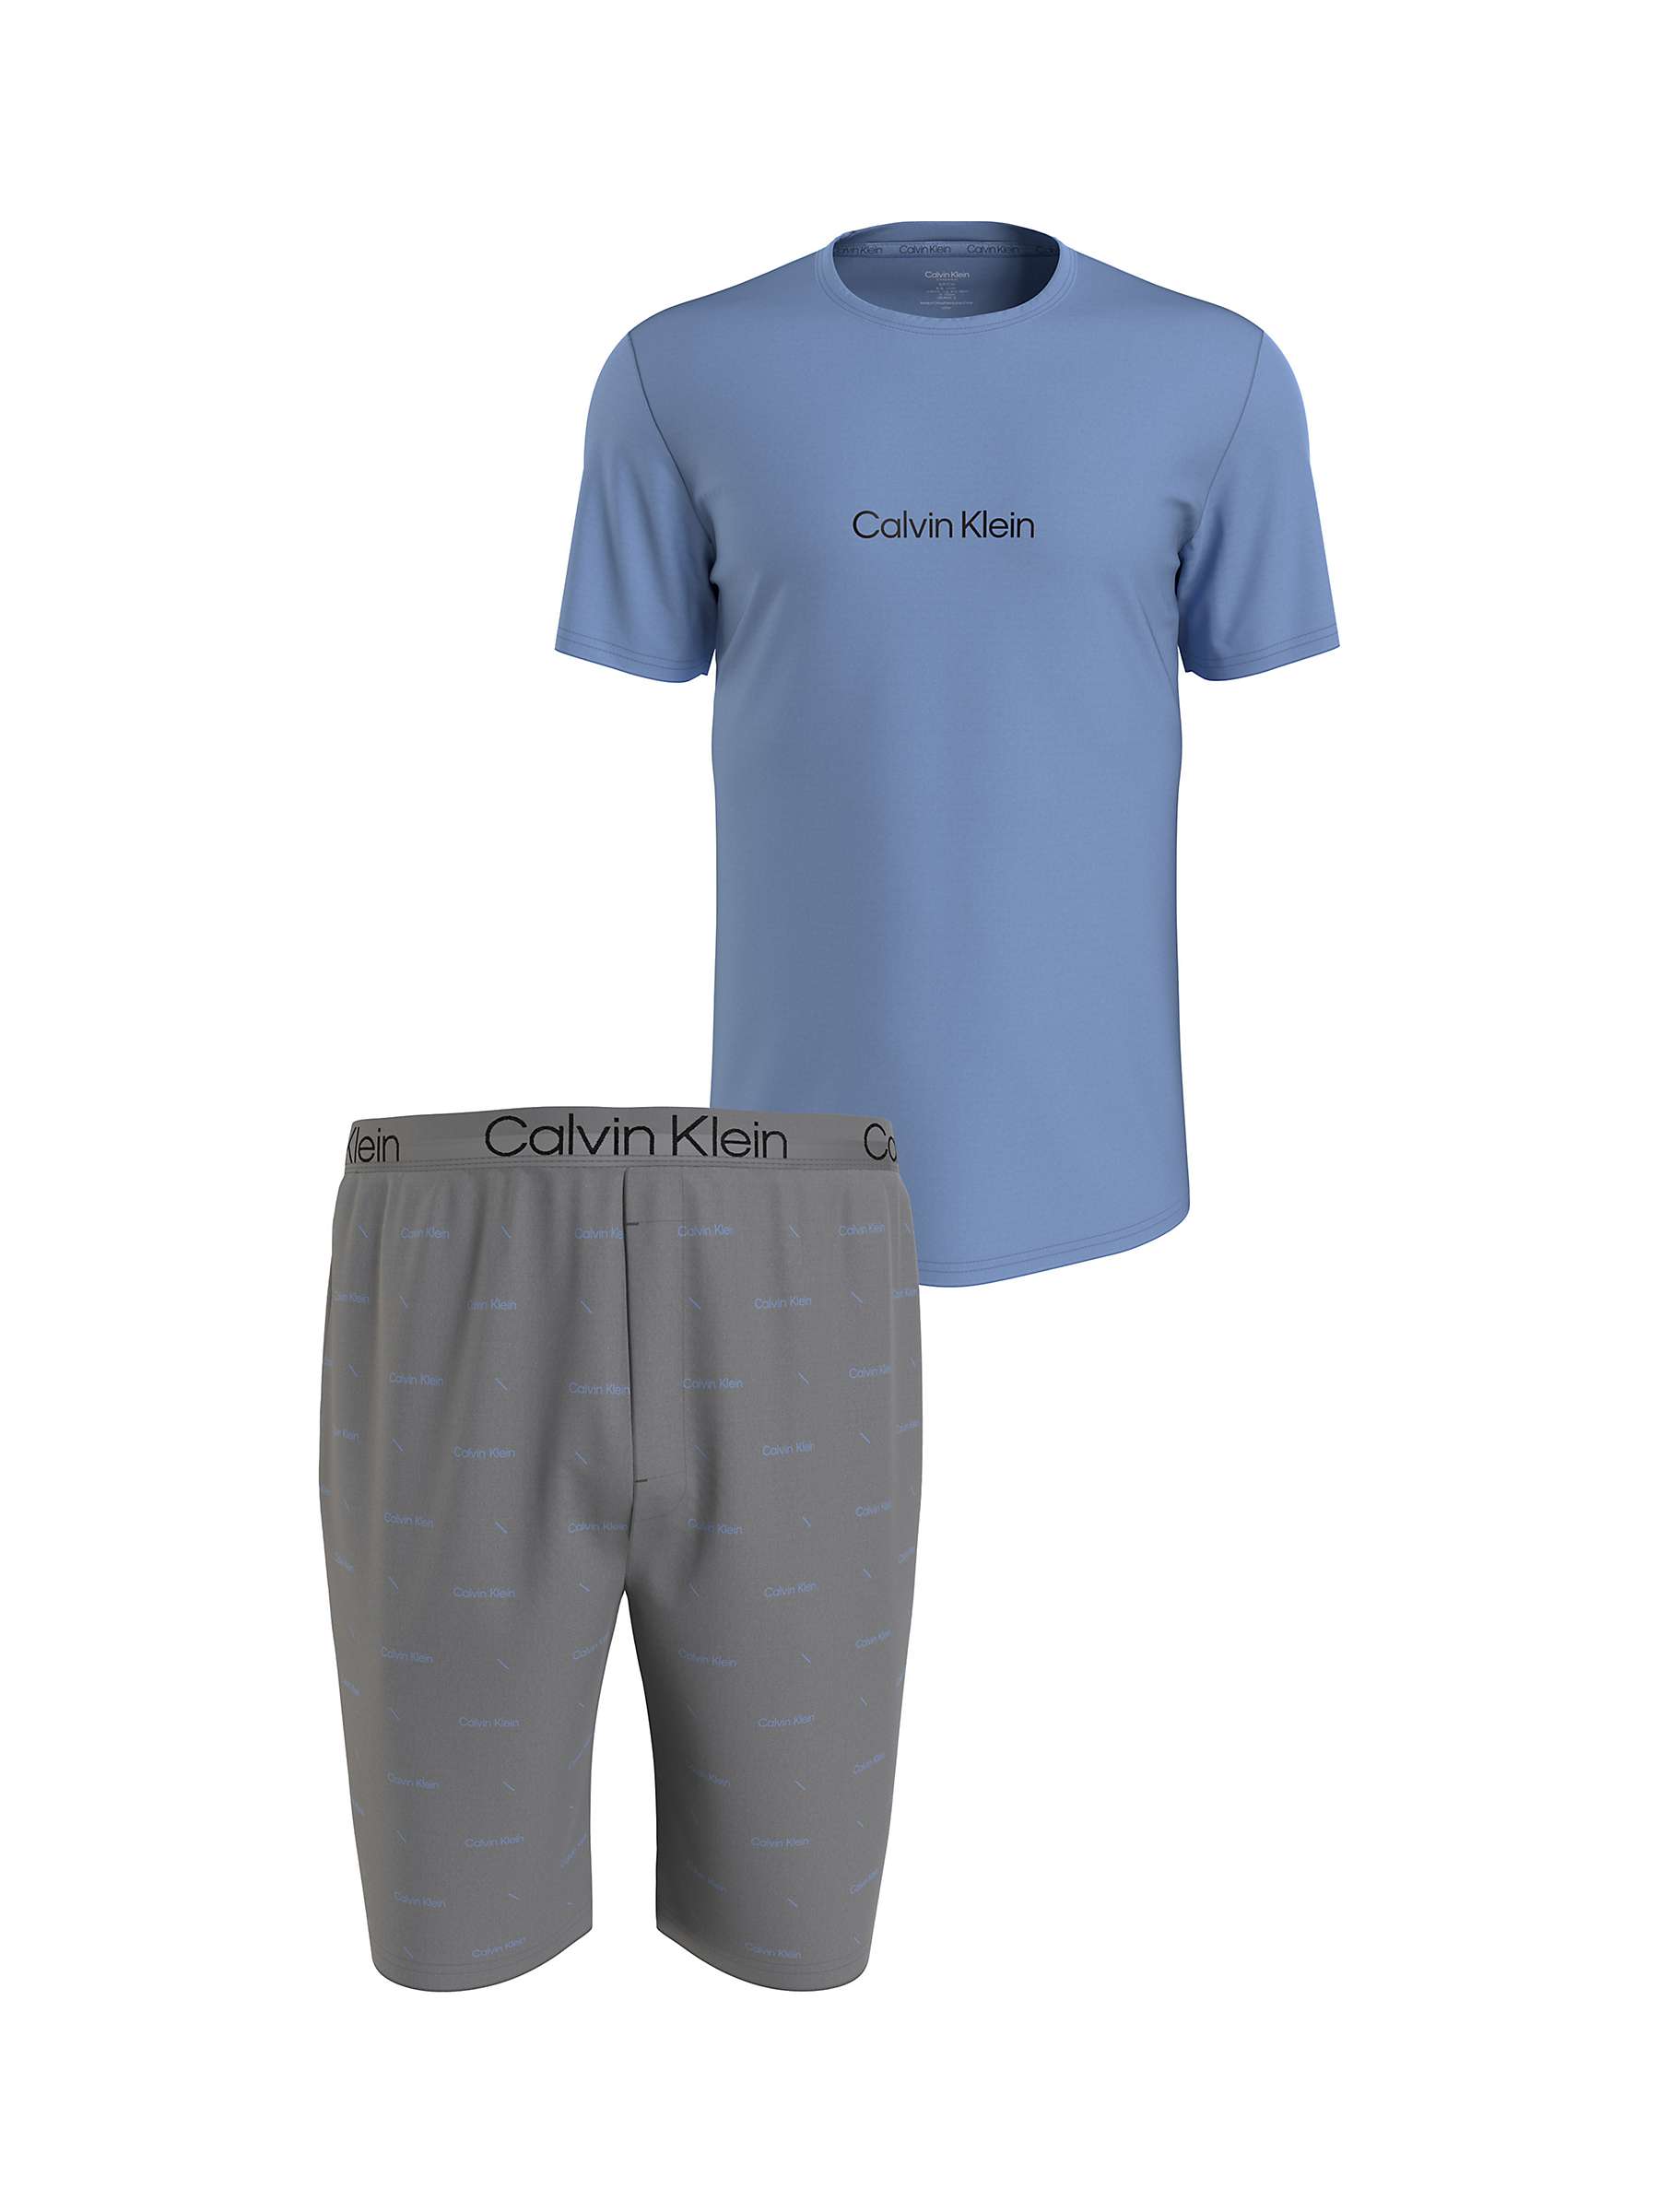 Buy Calvin Klein Slogan Lounge Top & Shorts Set, Blue/Grey Online at johnlewis.com